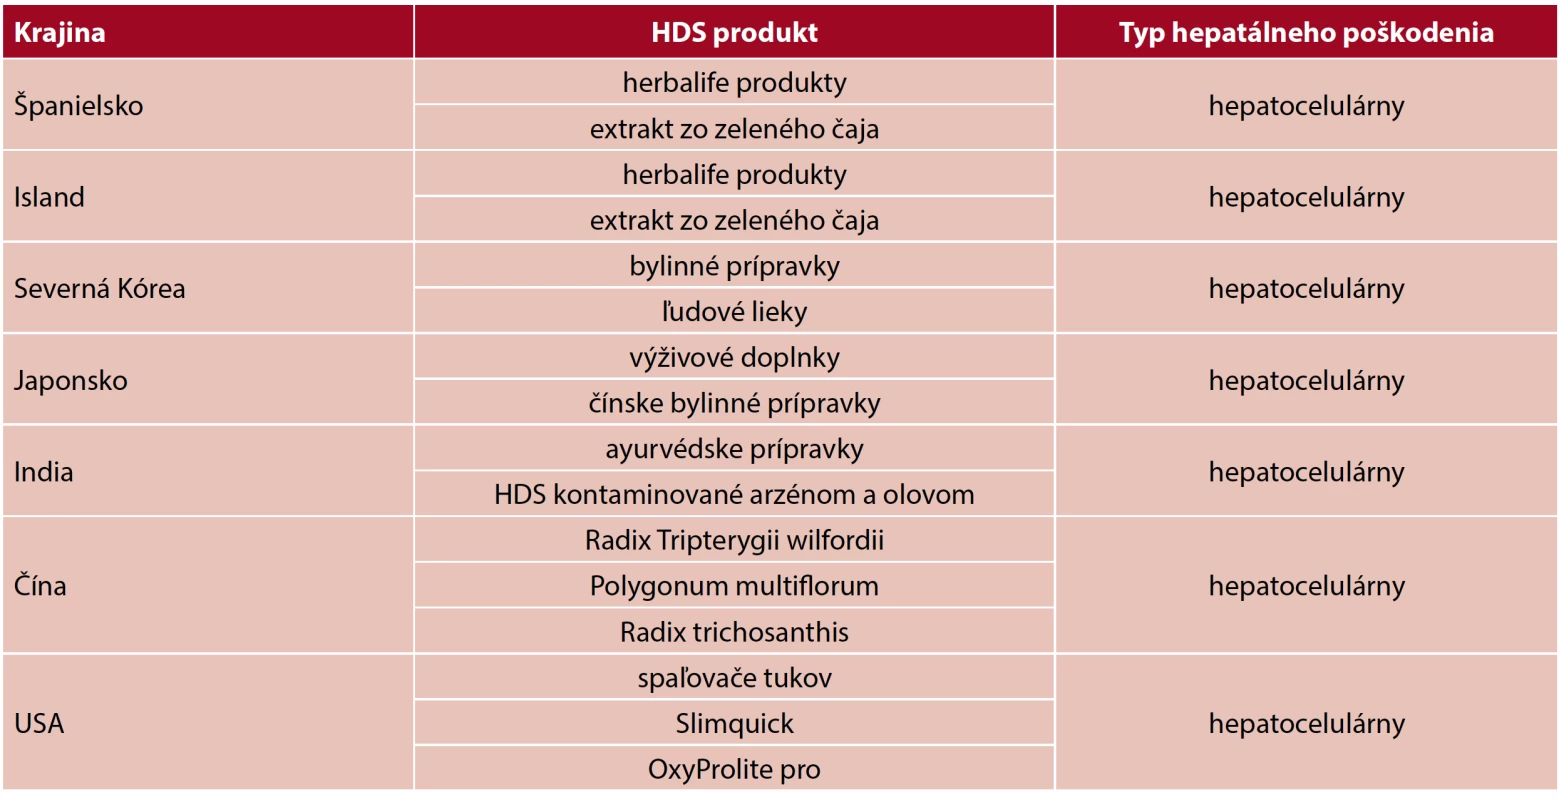 Hlavné používané HDS vo svete a typ pečeňového poškodenia (9) 